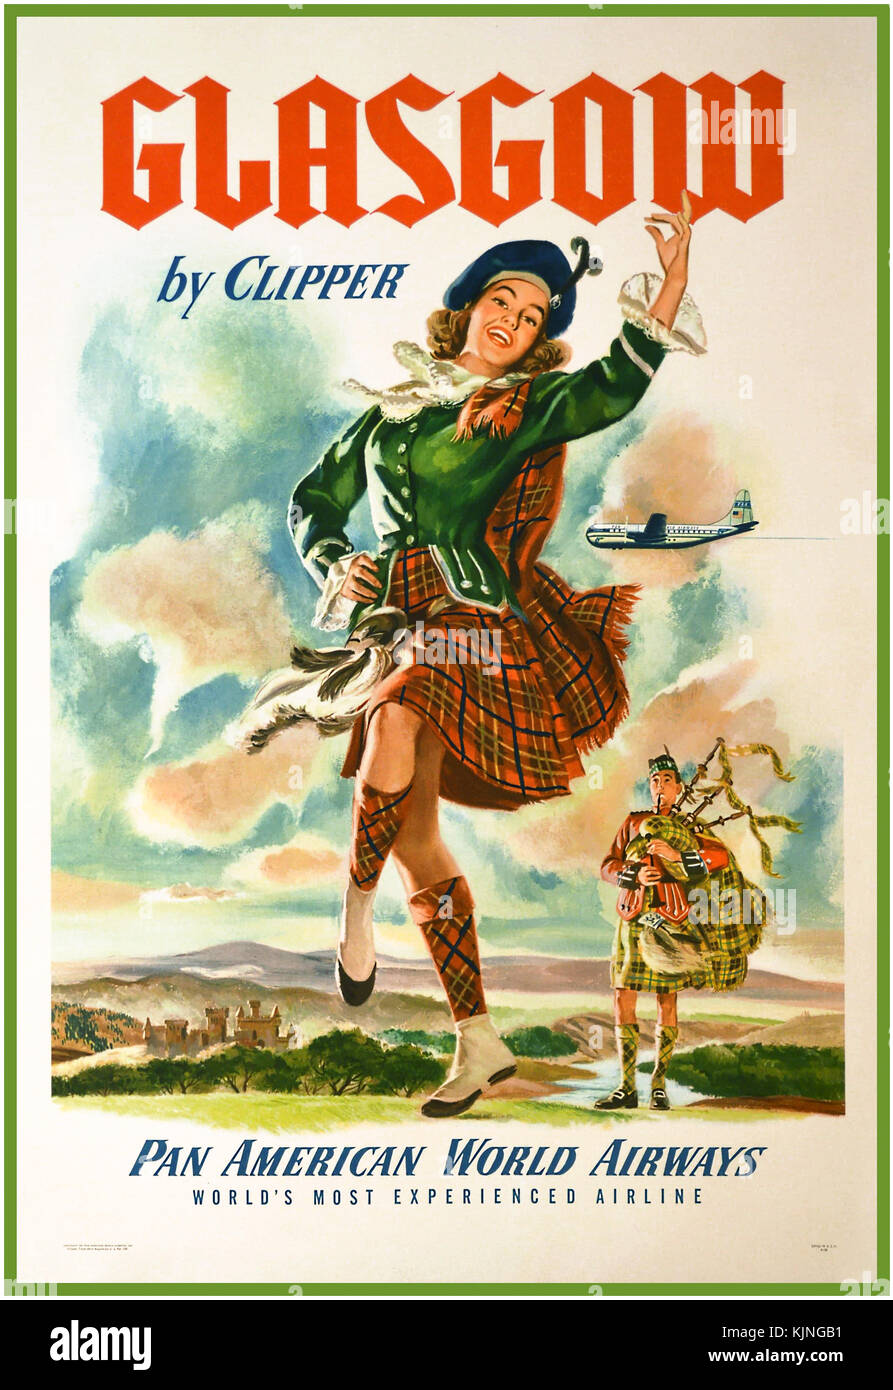 Loch Lomond Scotland British Railway Old Advert Print Vintage Photo Retro Poster